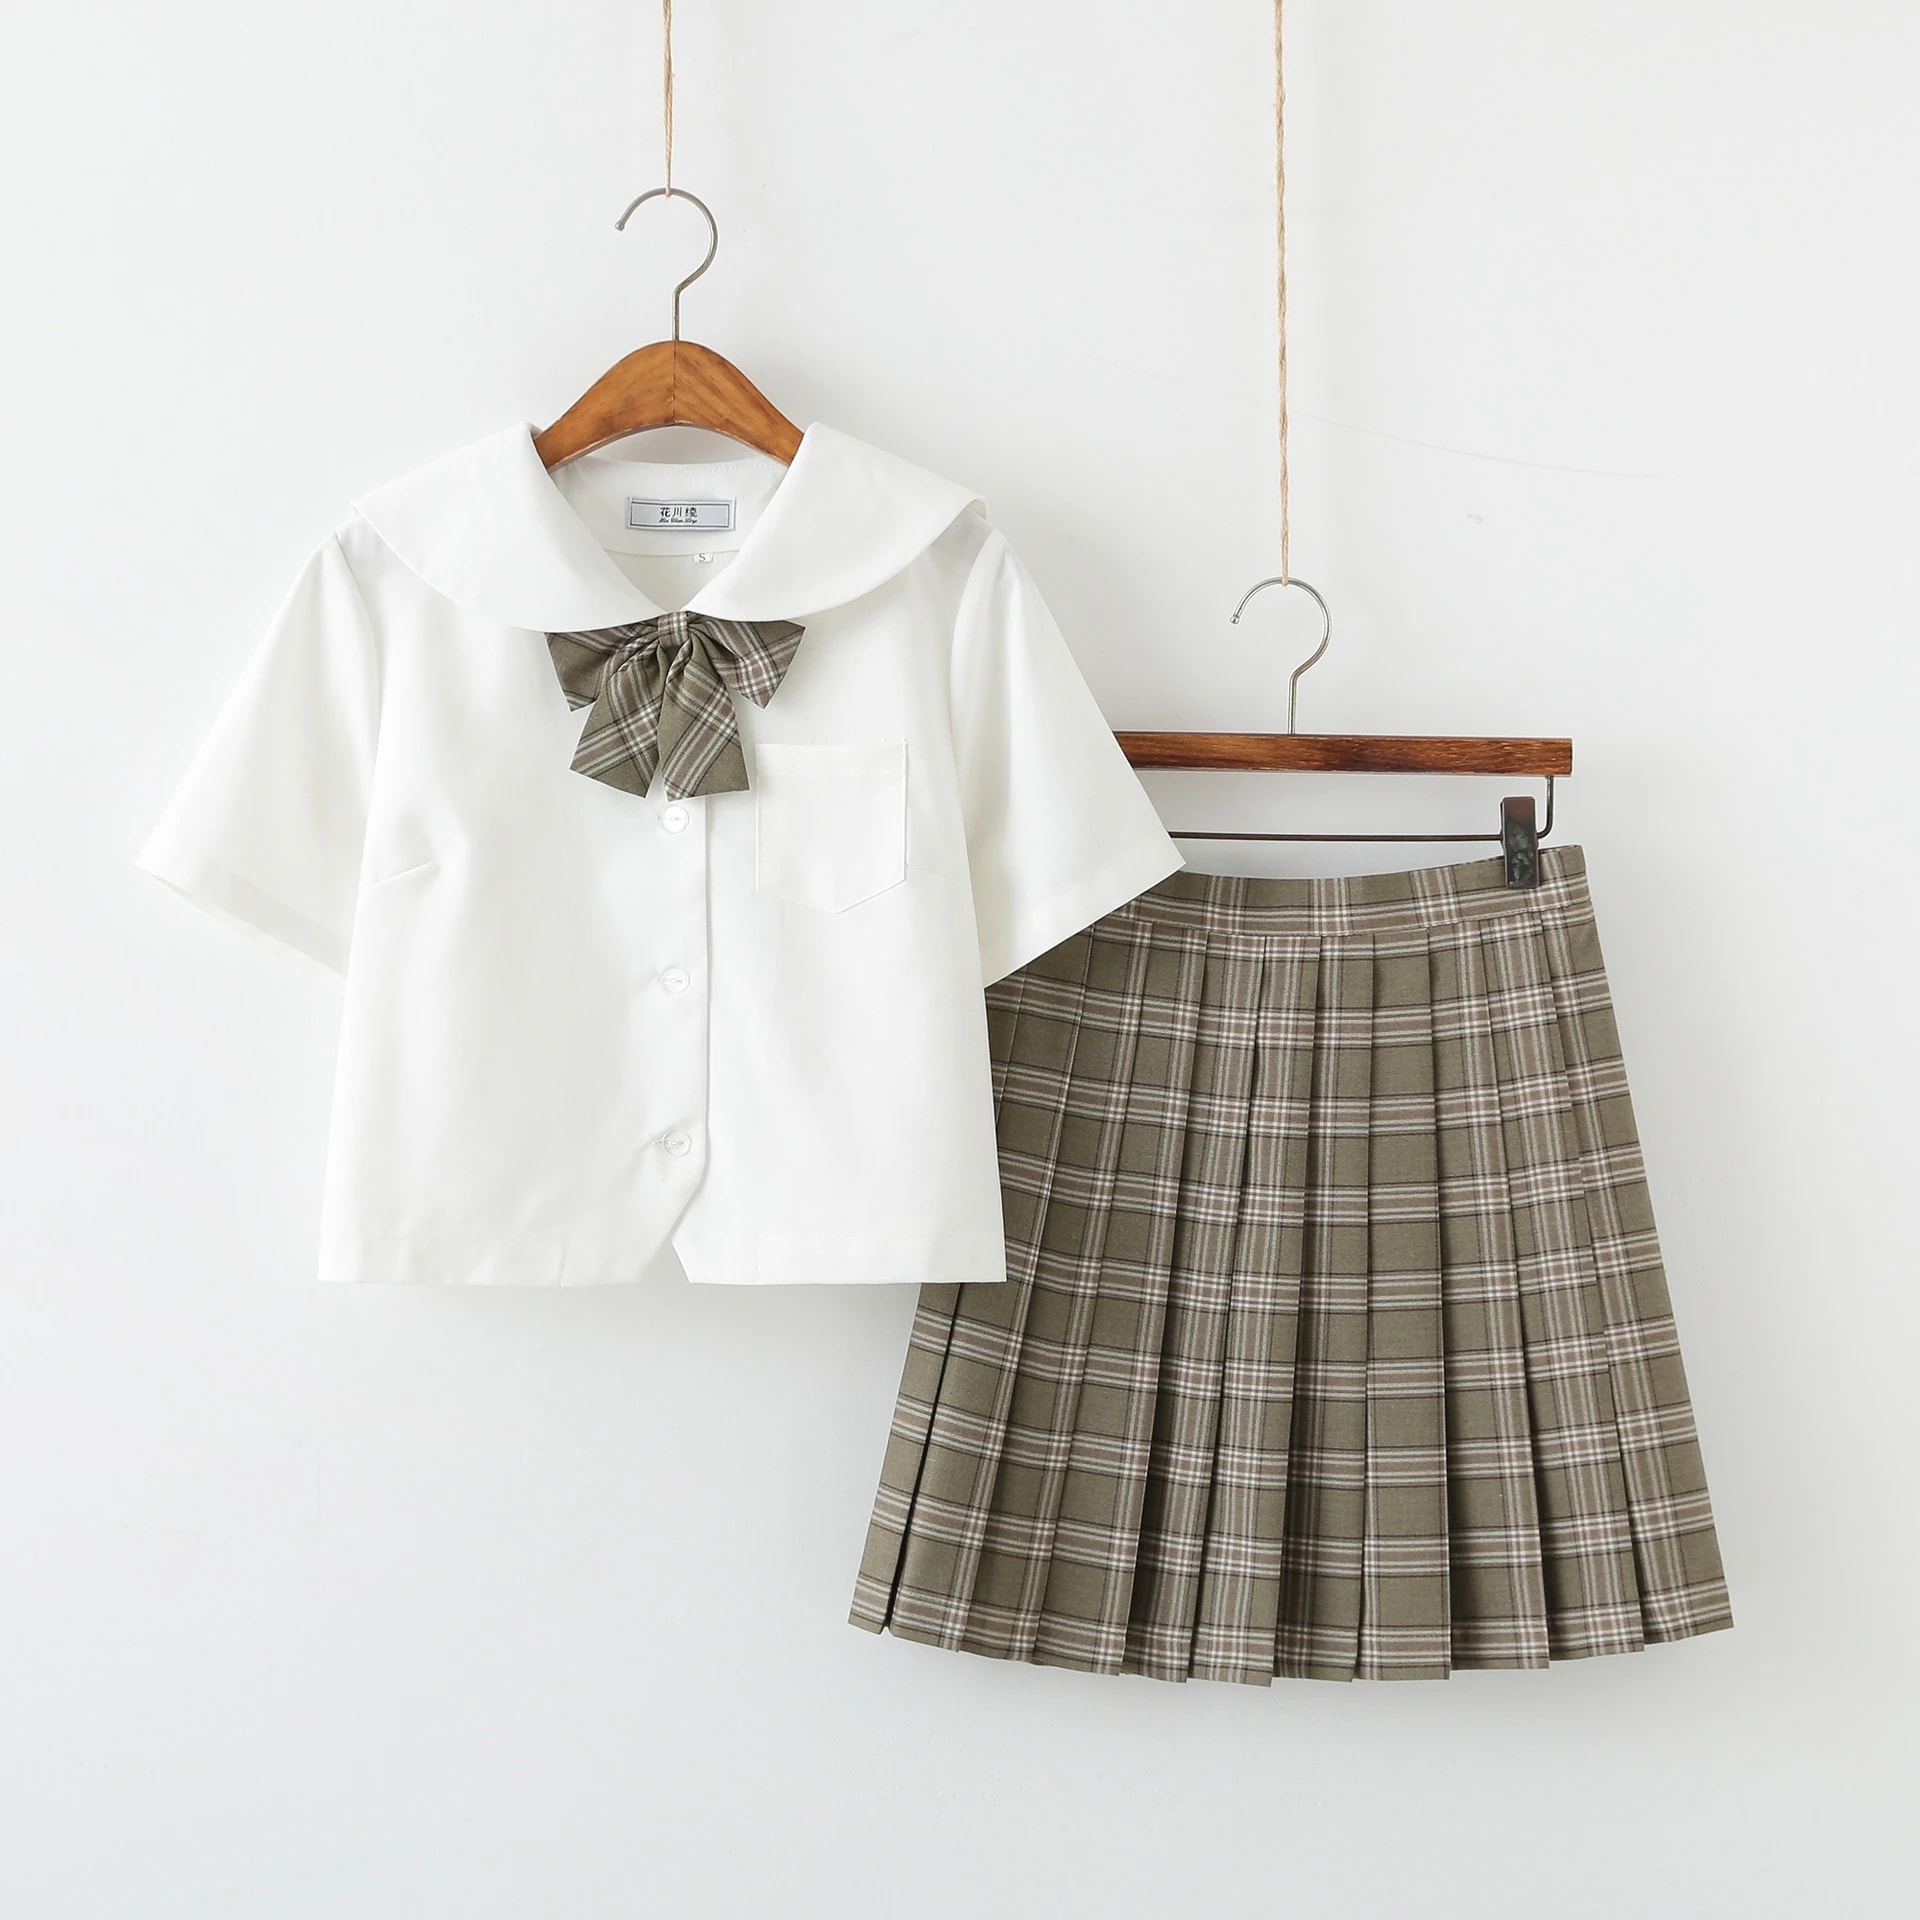 白いシャツ緑の格子縞のスカート日本のセーラー服中学生中学生jk制服スカートスーツ制服クラスサービス